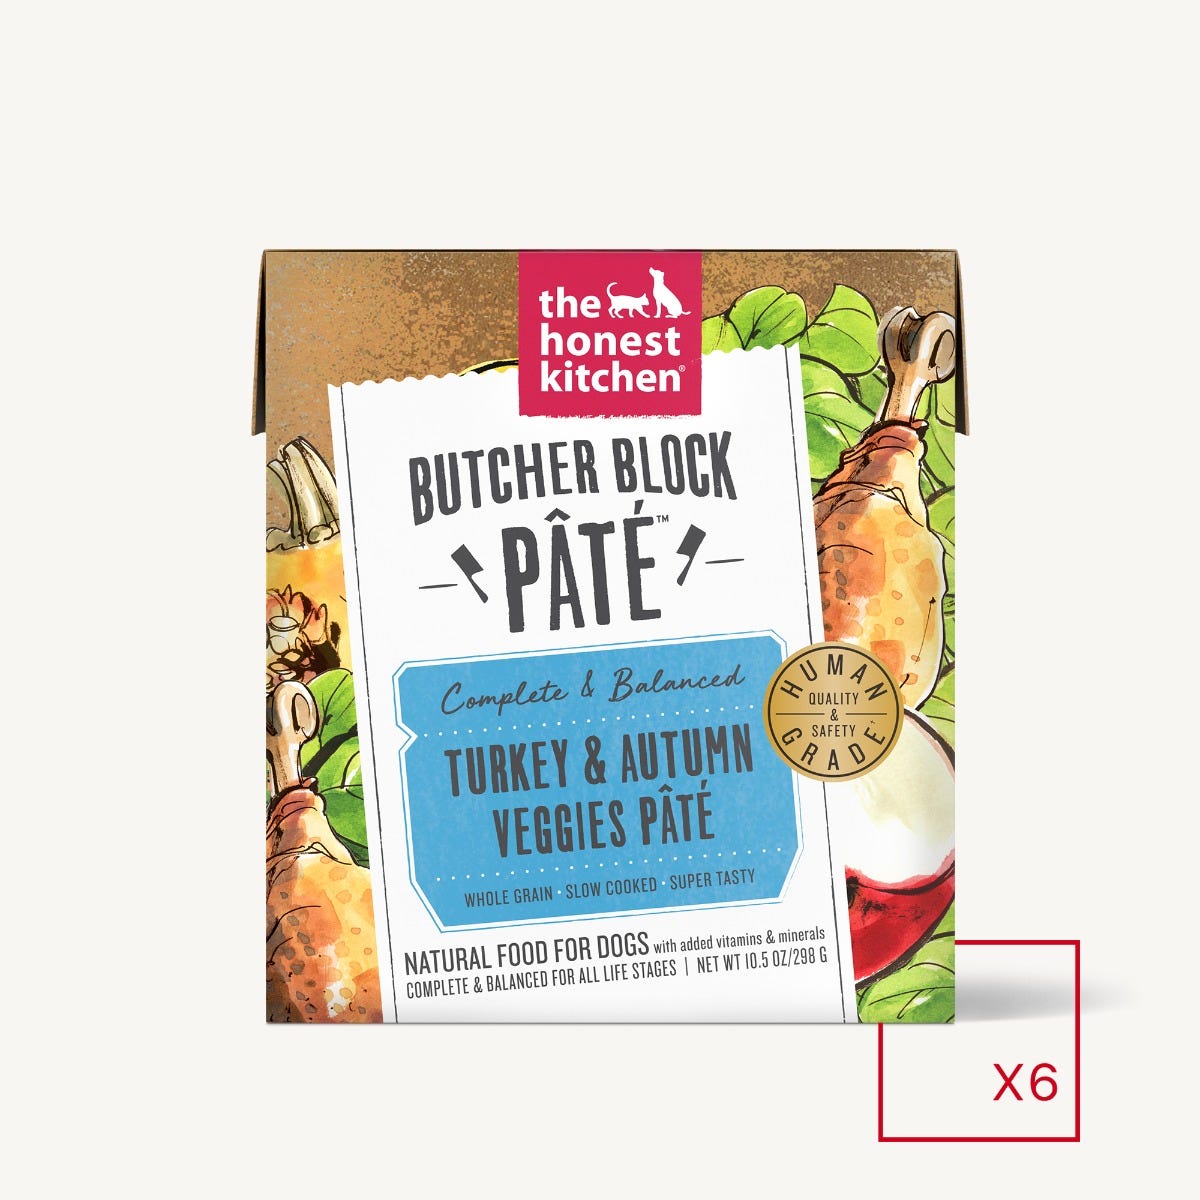 The Honest Kitchen - Butcher Block Pate -Turkey & Autumn Veggies (Wet Dog Food)